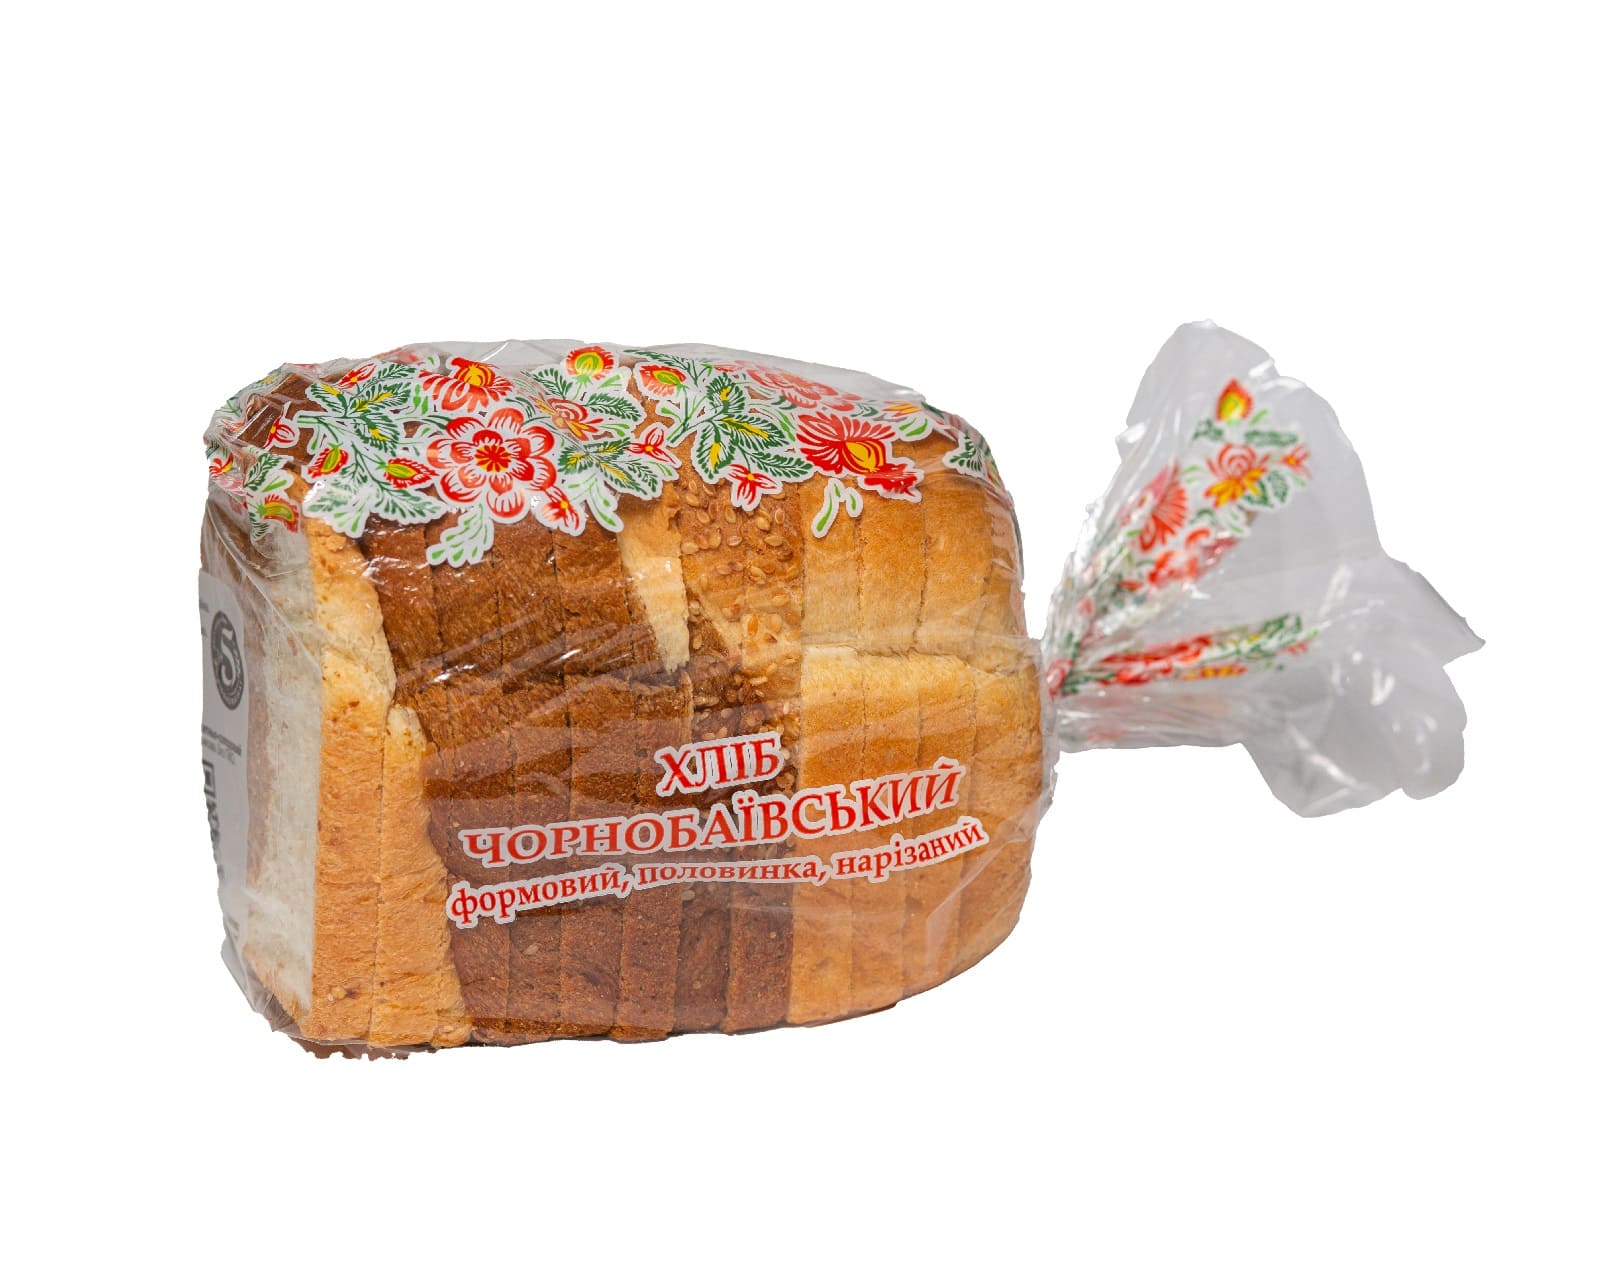 Хліб «Чорнобаївський» формовий, половинка, нарізаний